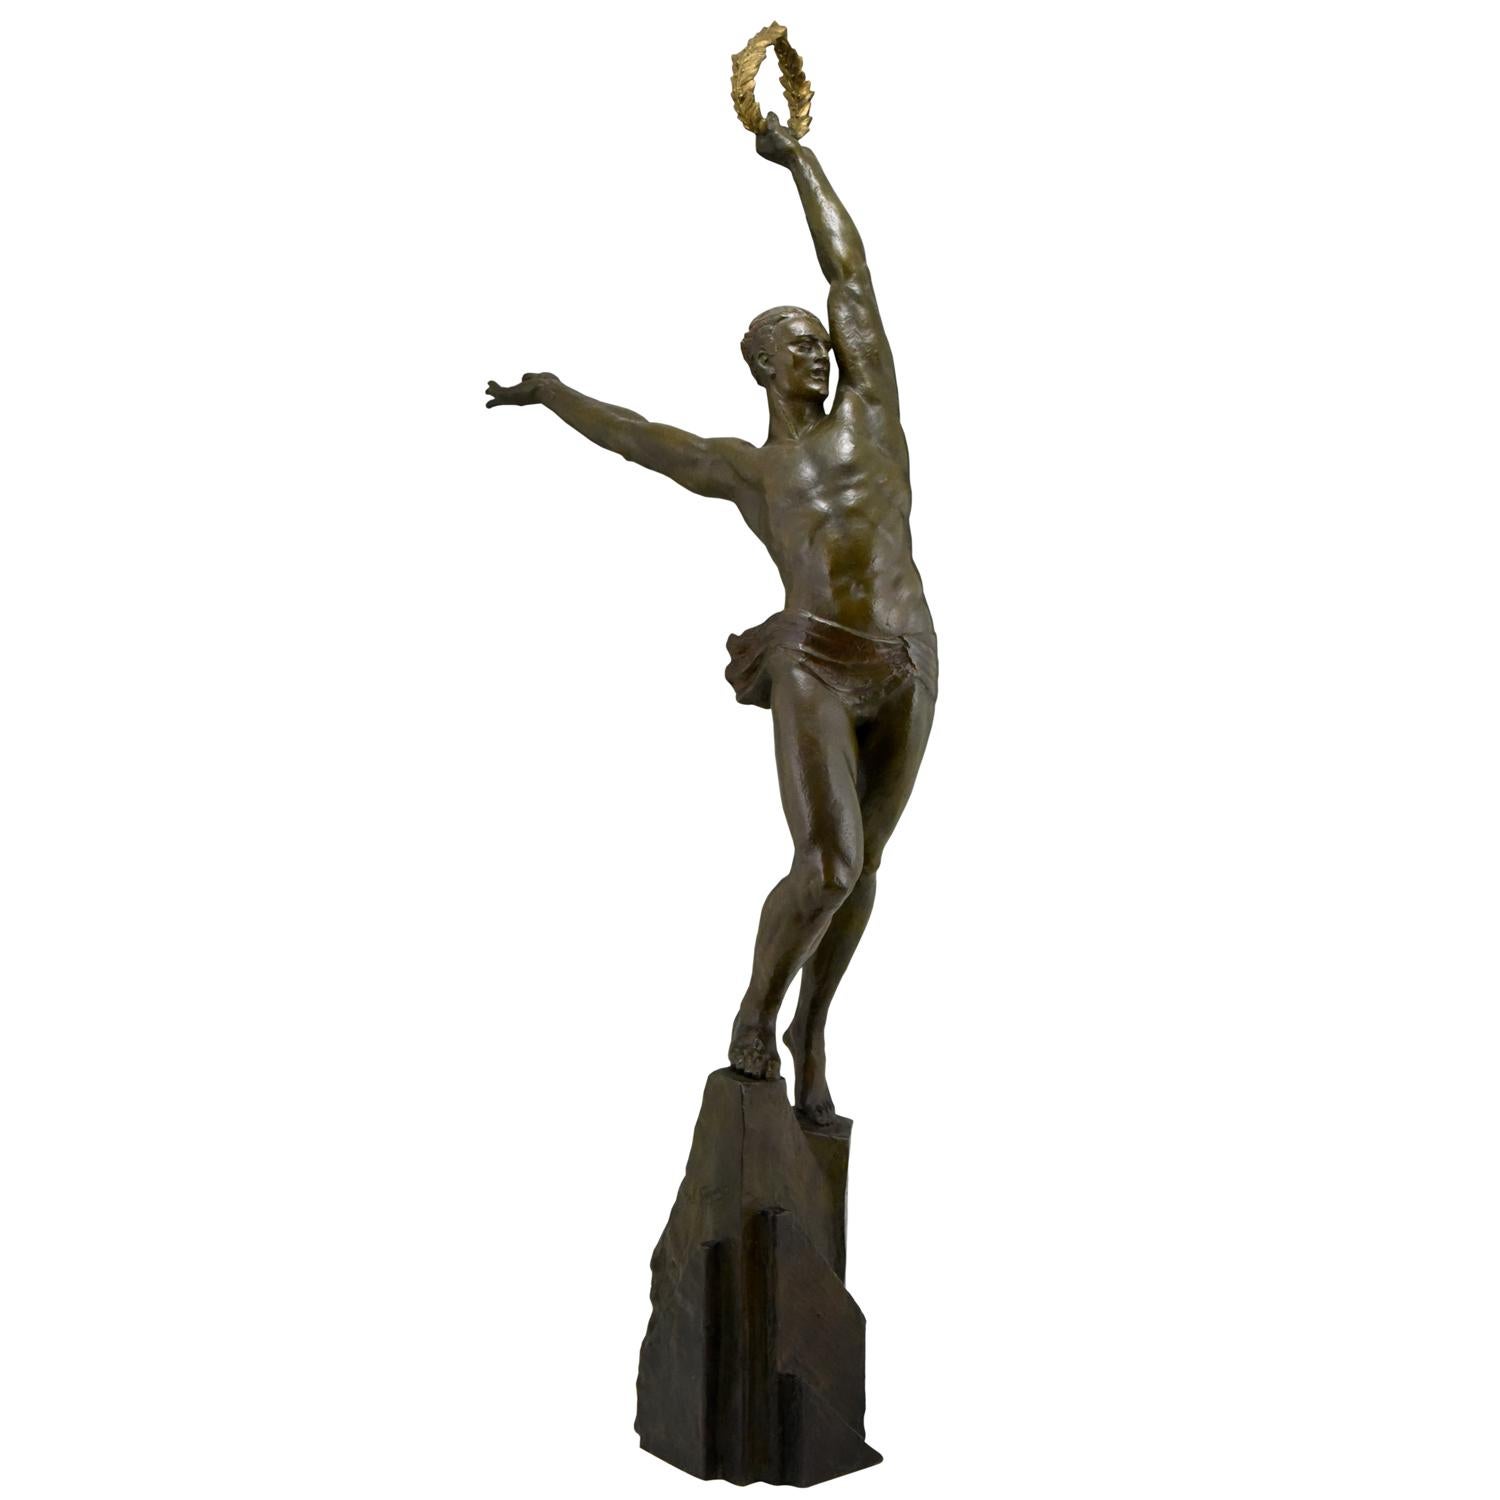 French Art Deco bronze sculpture athlete Pierre Le Faguays The Pinnacle 110 cm / 43